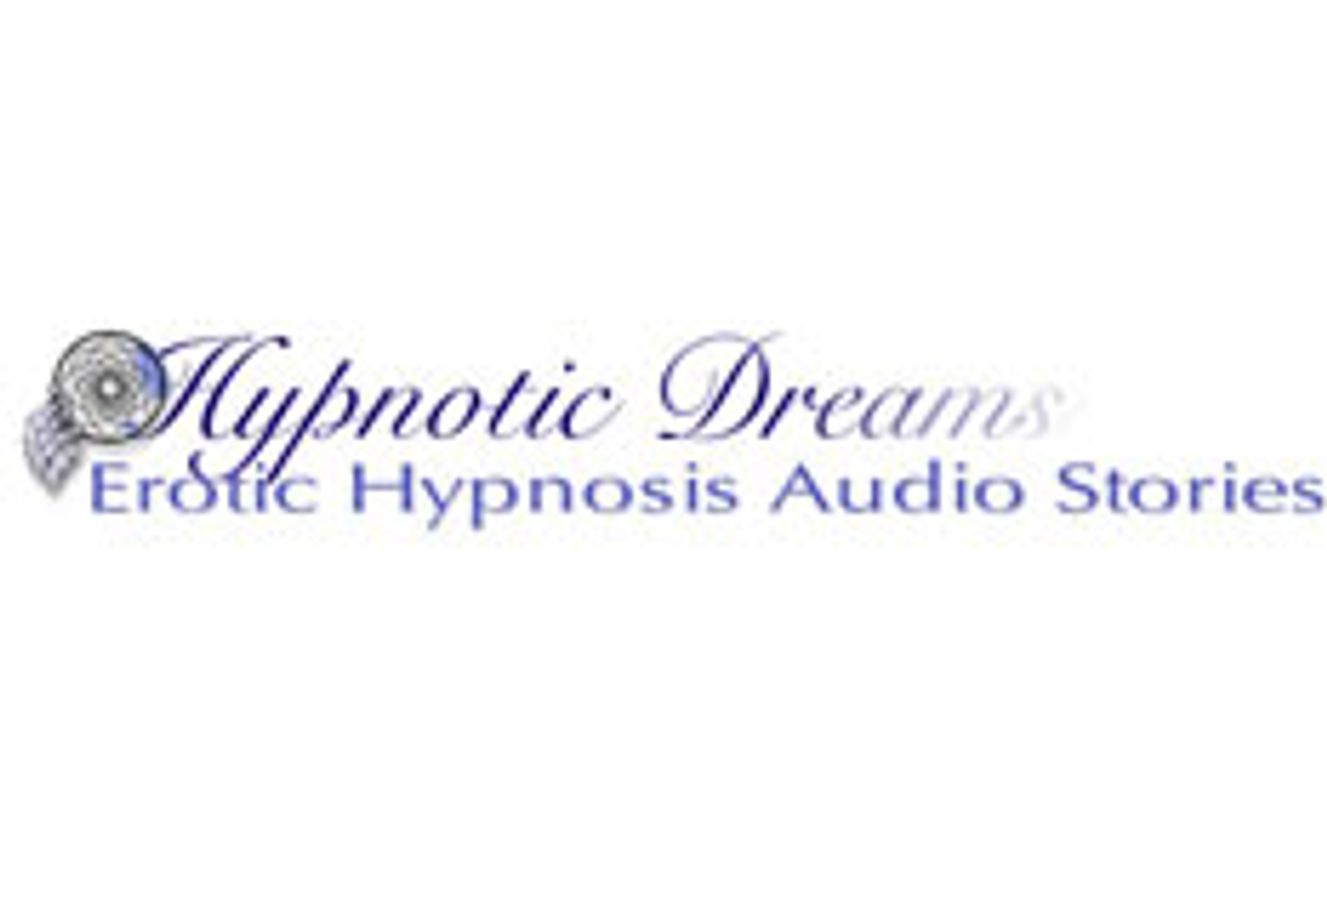 Hypnotic Dreams